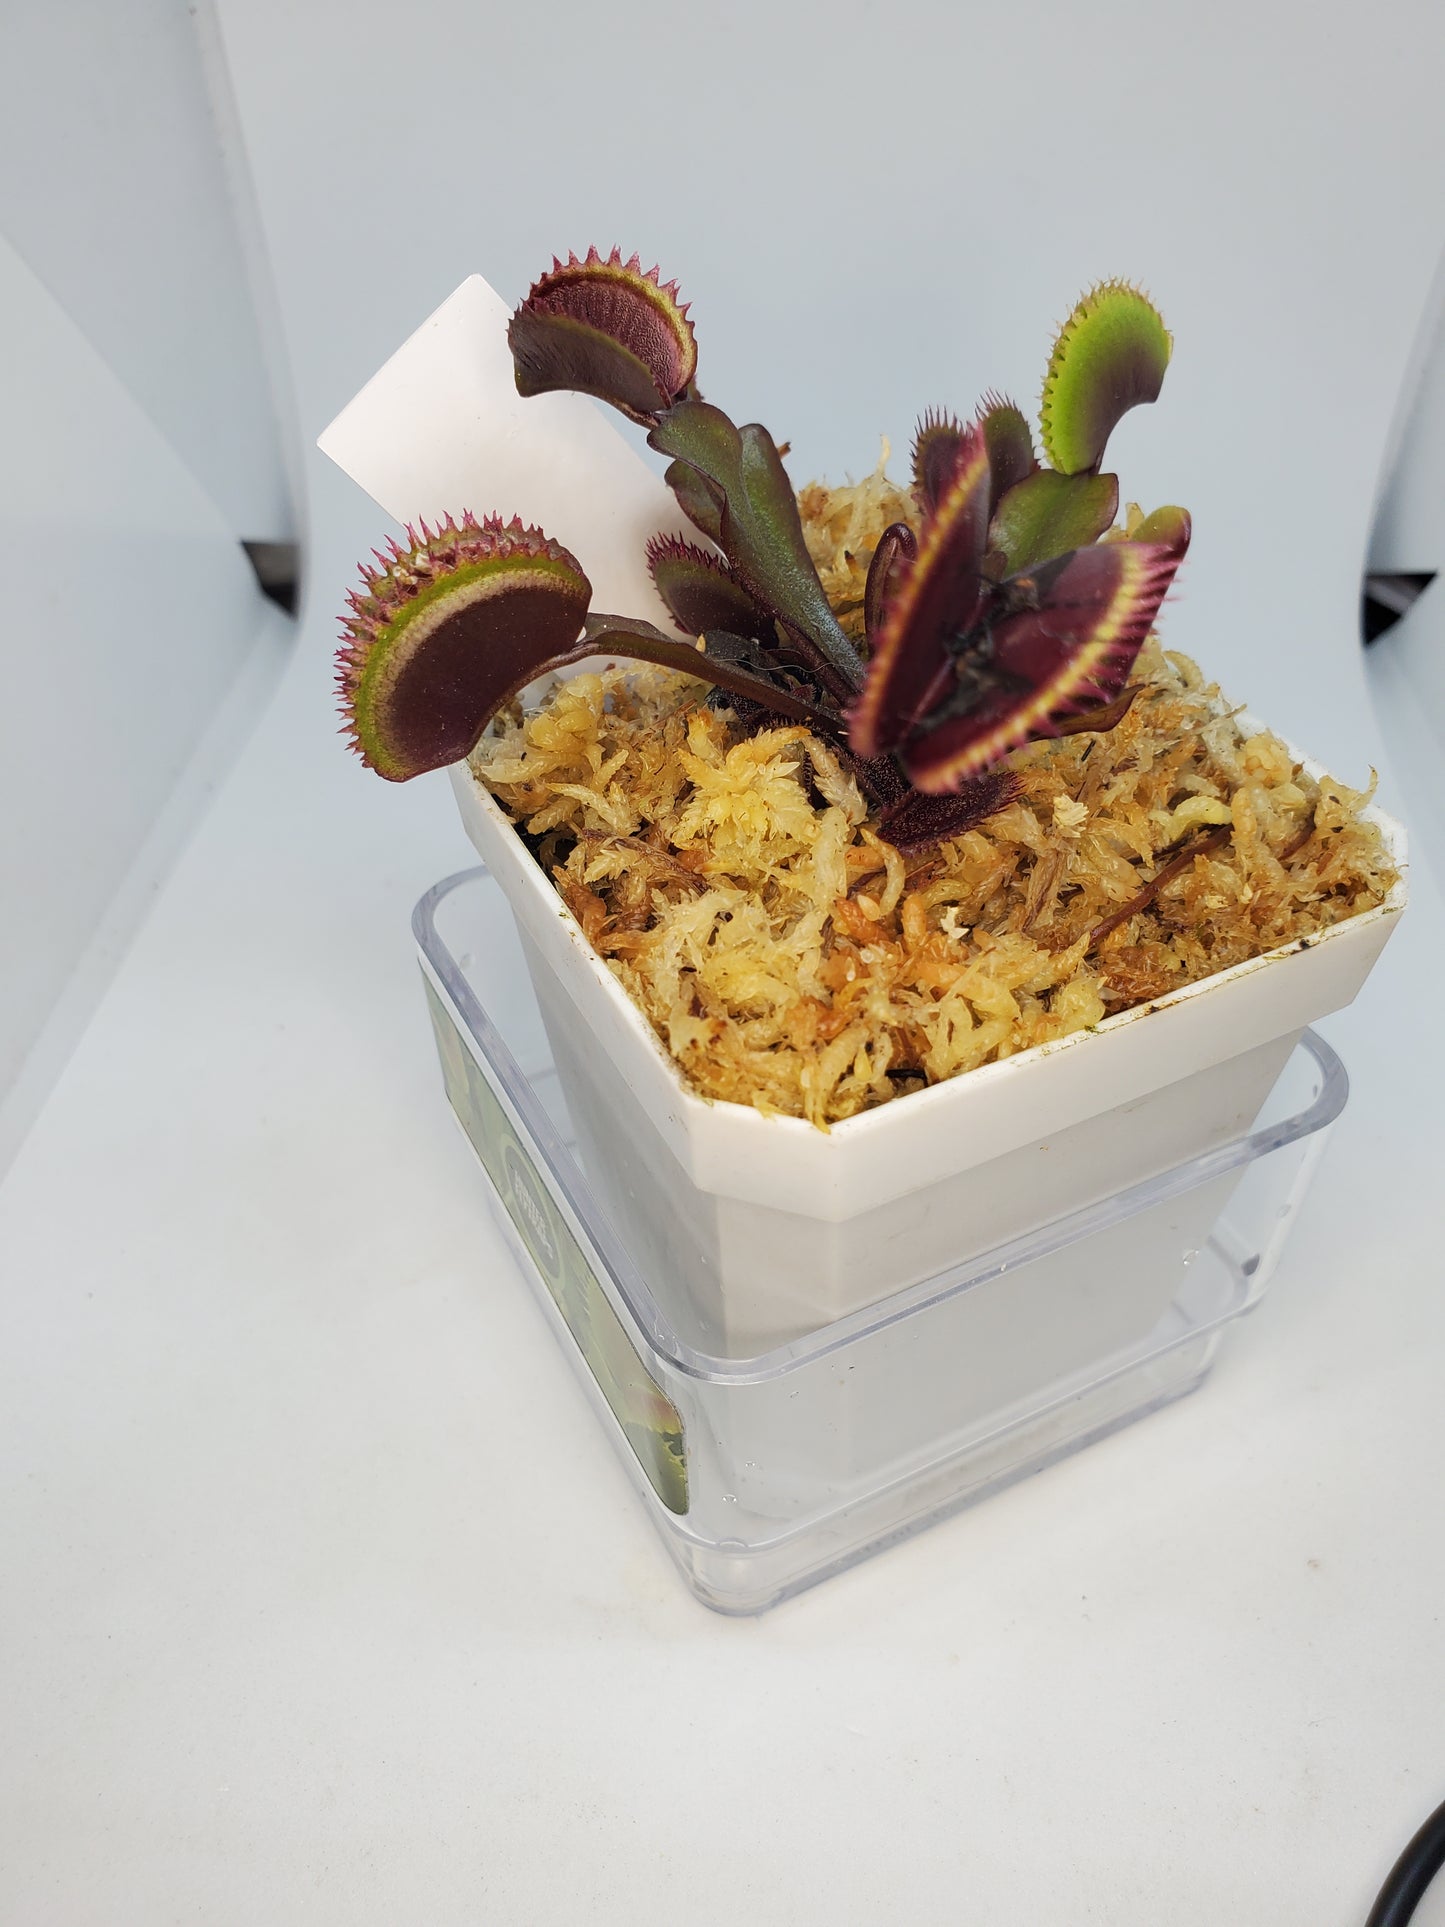 FTS Crimson Sawtooth - Venus Flytrap Carnivorous live plant